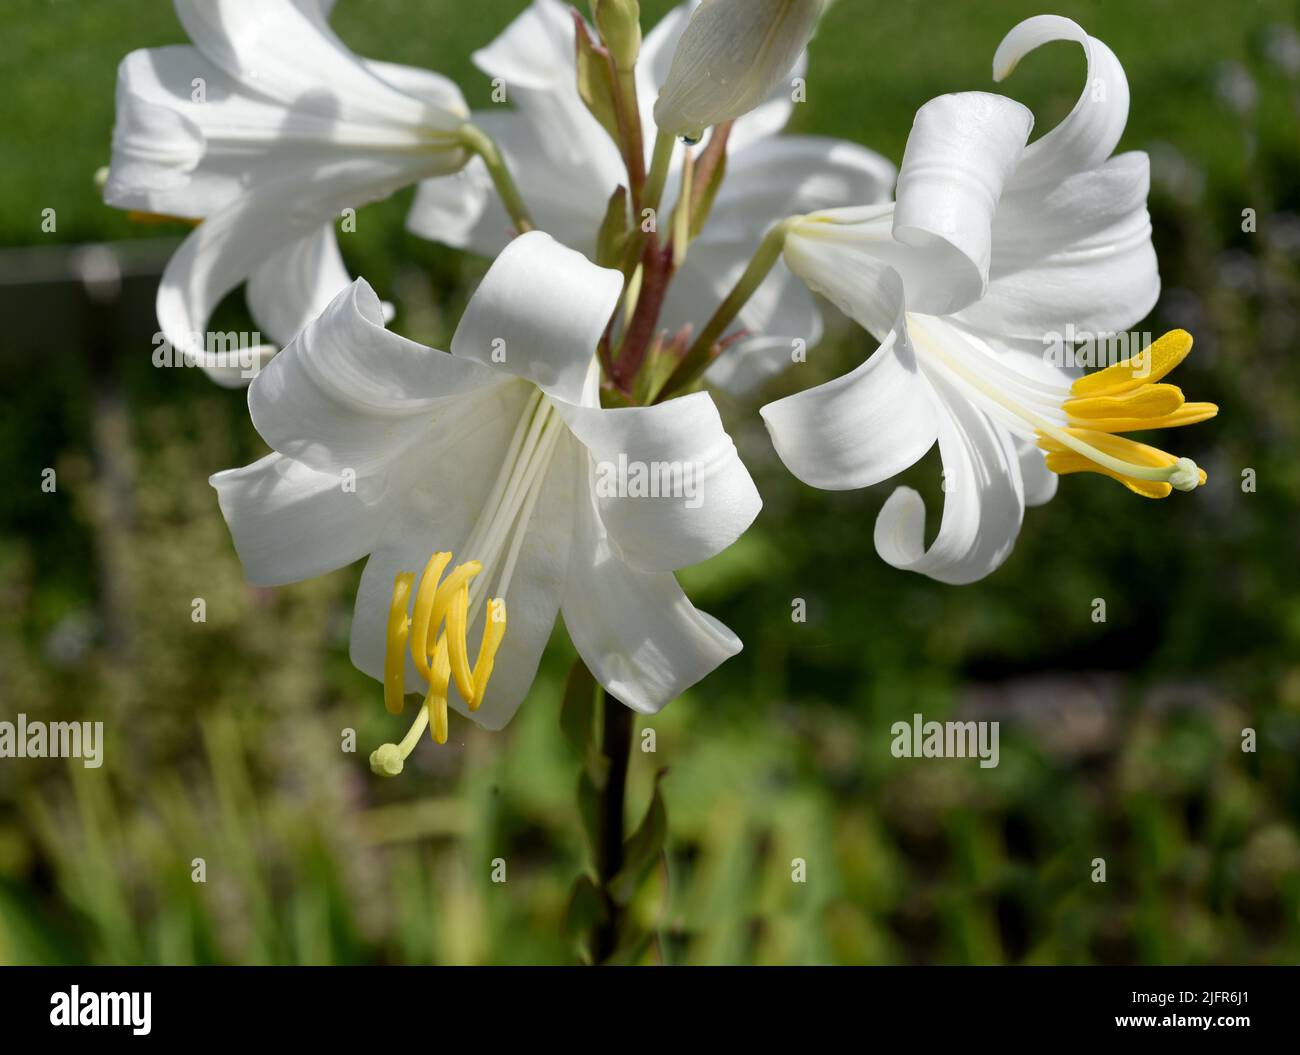 Madonnen-Lilie, Madonnenlilie oder Weisse Lilie ist eine Art der Gattung der Lilien und eine wichtige Heilpflanze. Madonna lily, Madonna lily or white Stock Photo